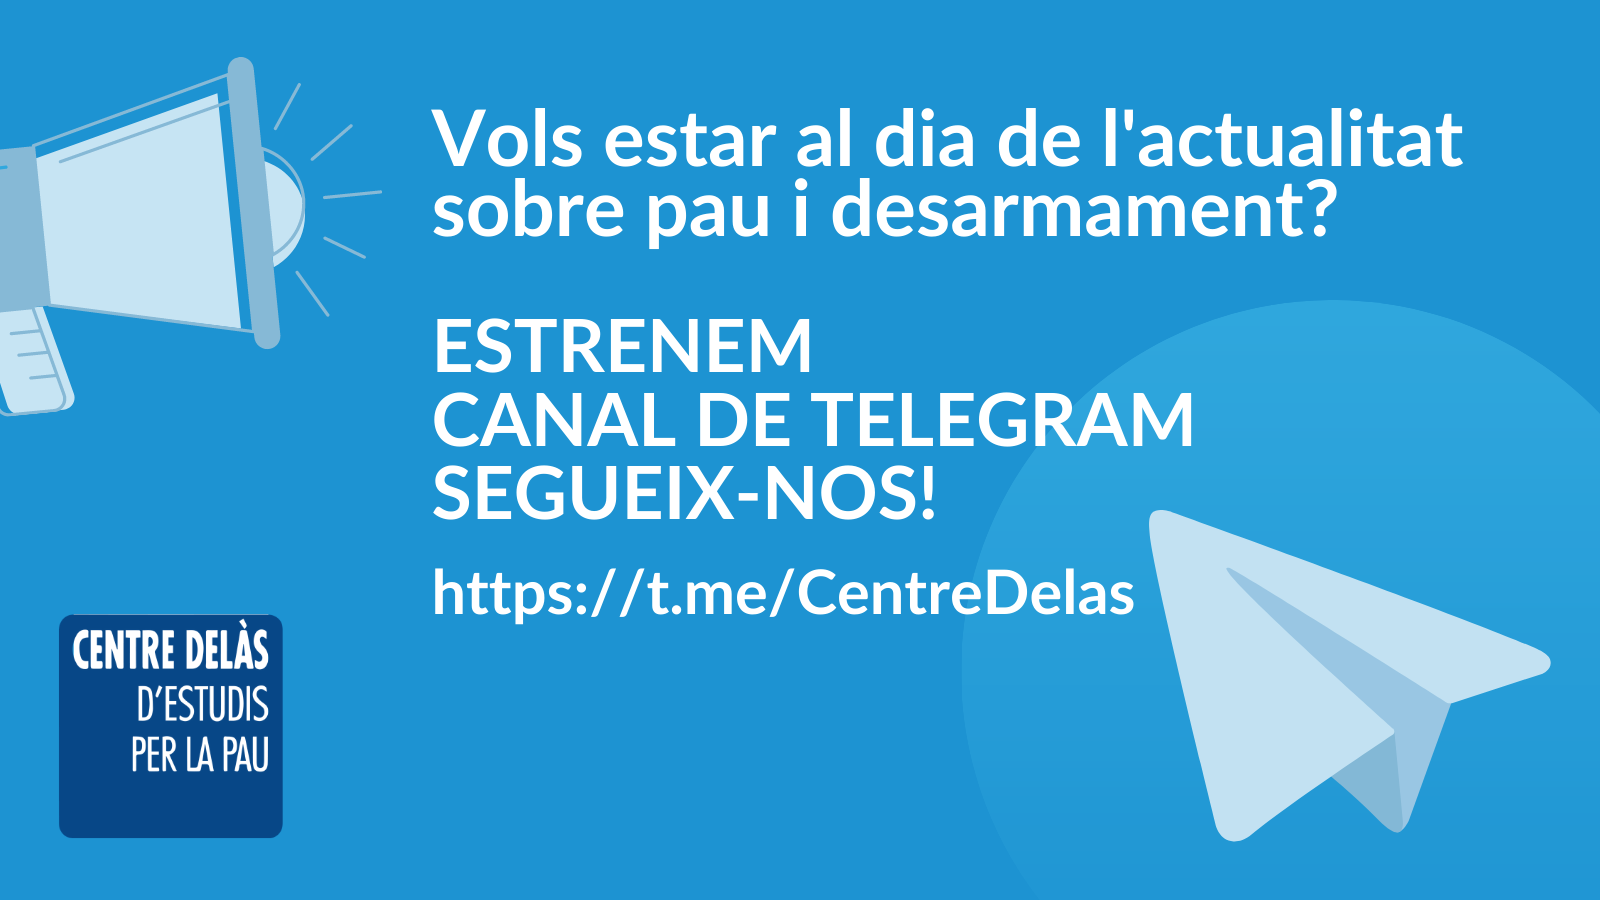 Estrenem Canal de Telegram! Segueix-nos per estar al dia de l’actualitat sobre pau i desarmament